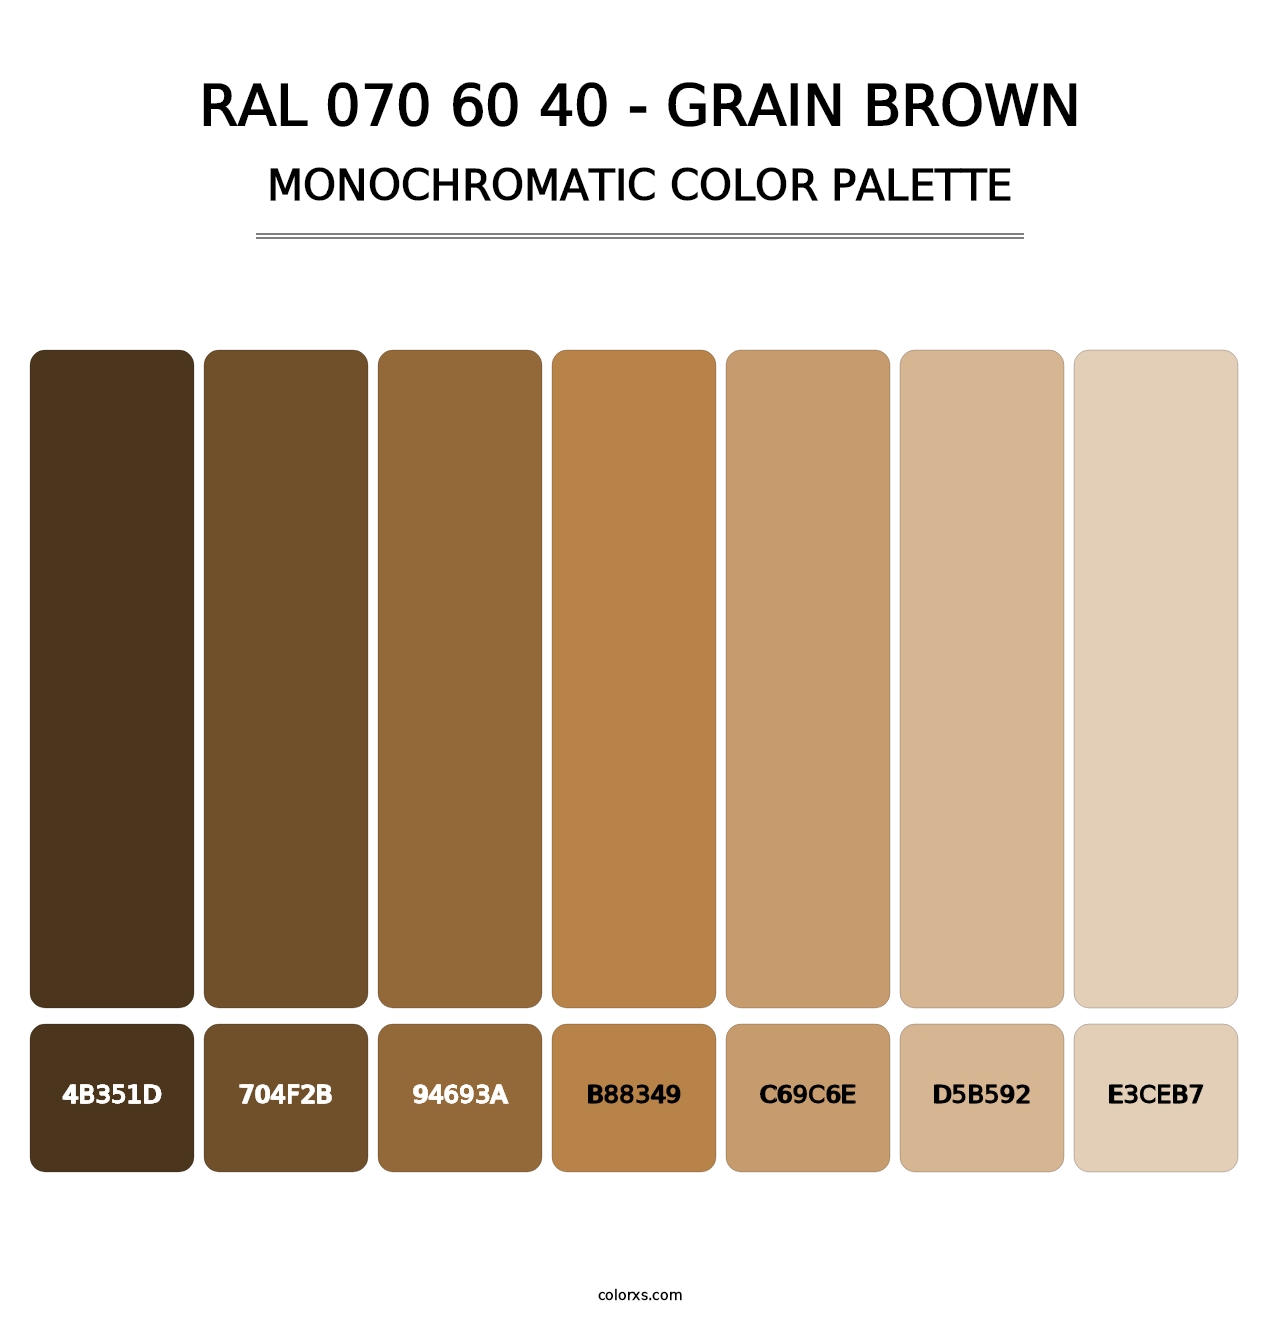 RAL 070 60 40 - Grain Brown - Monochromatic Color Palette